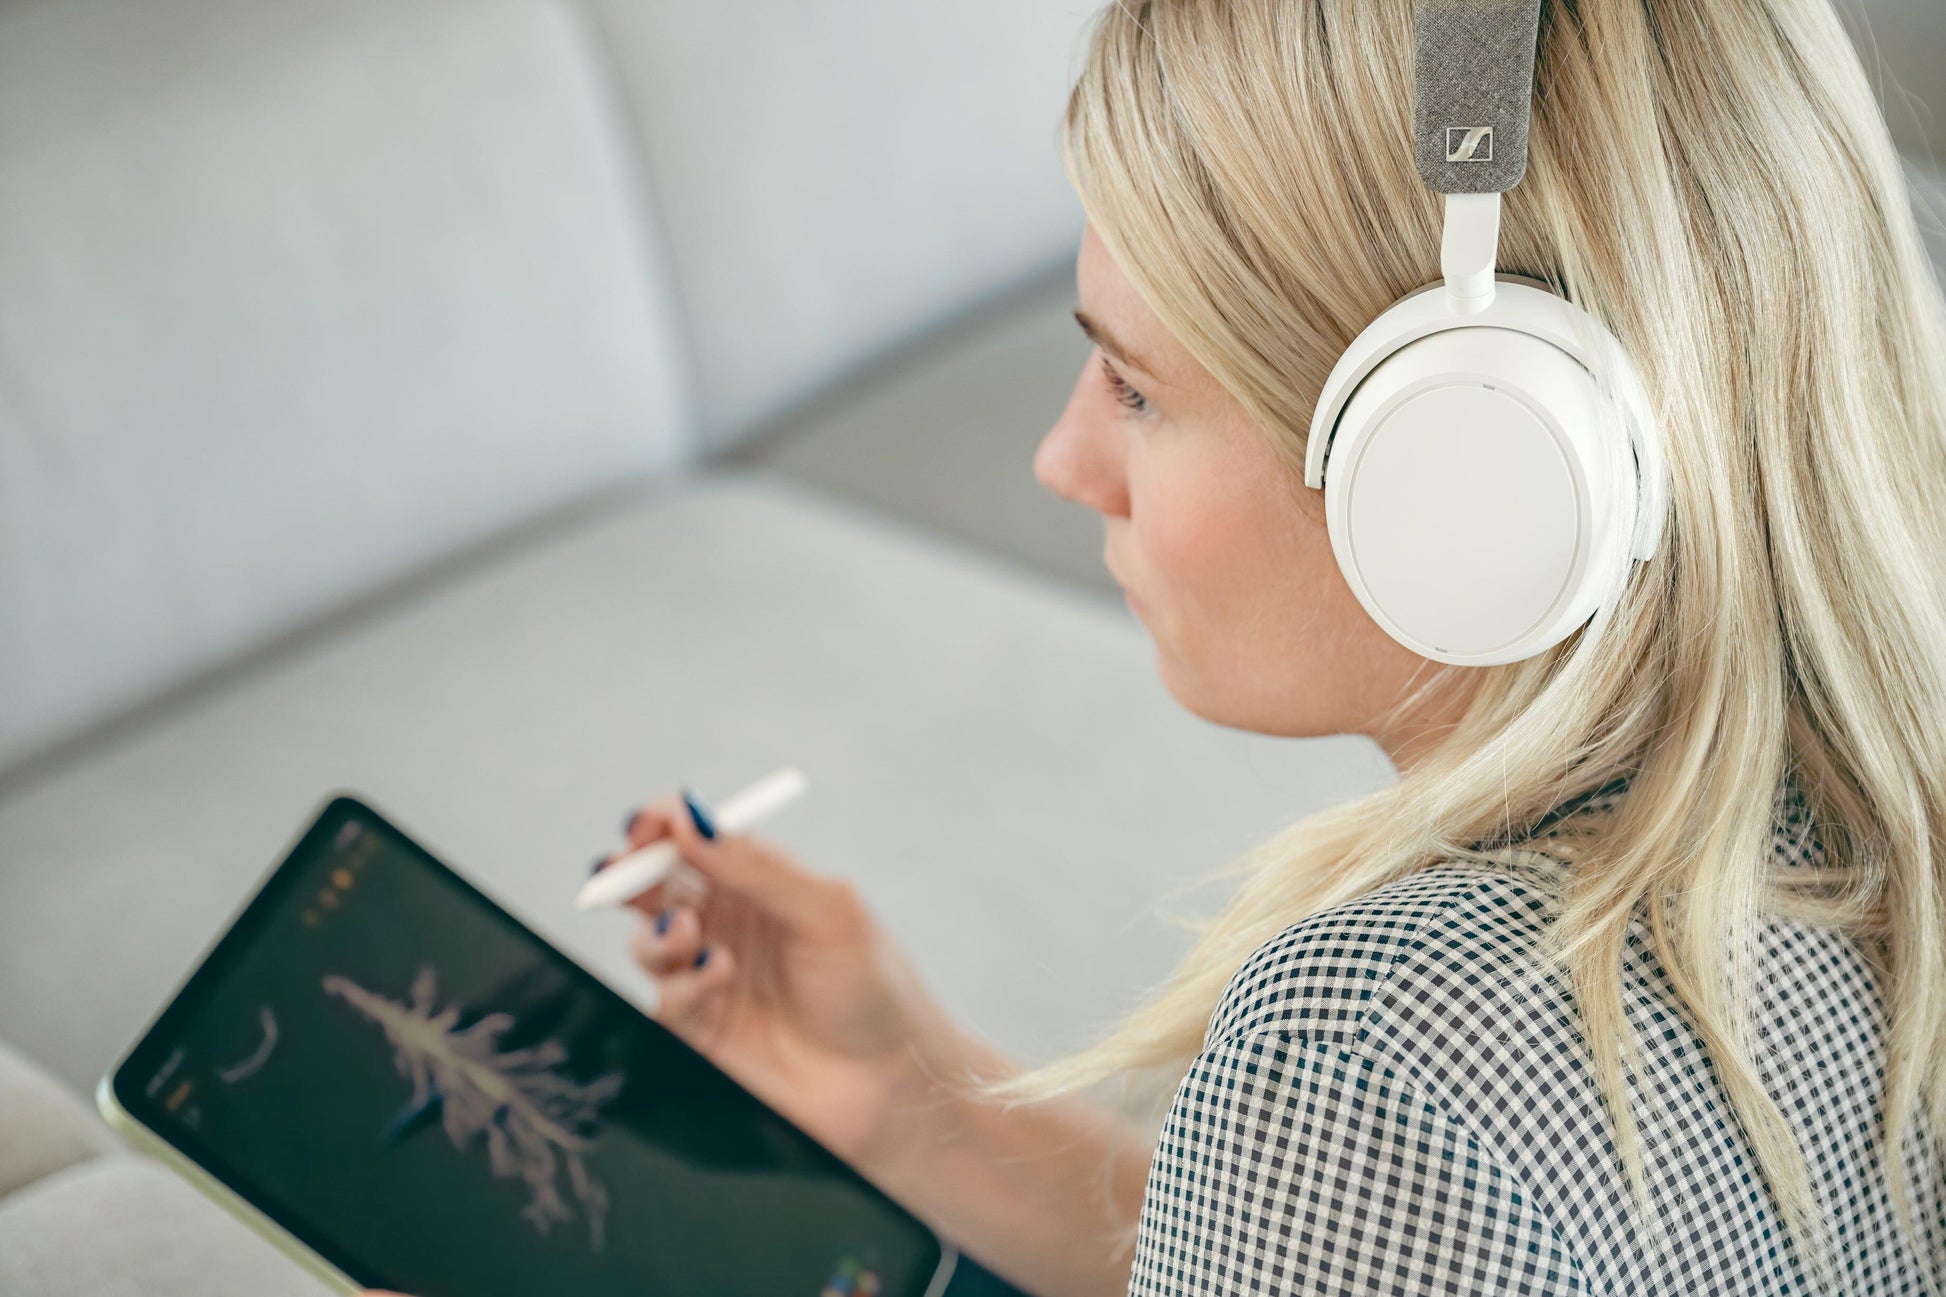 Sennheiser Momentum 4 Wireless Adaptive Noise-Canceling Over-The-Ear  Headphones - White